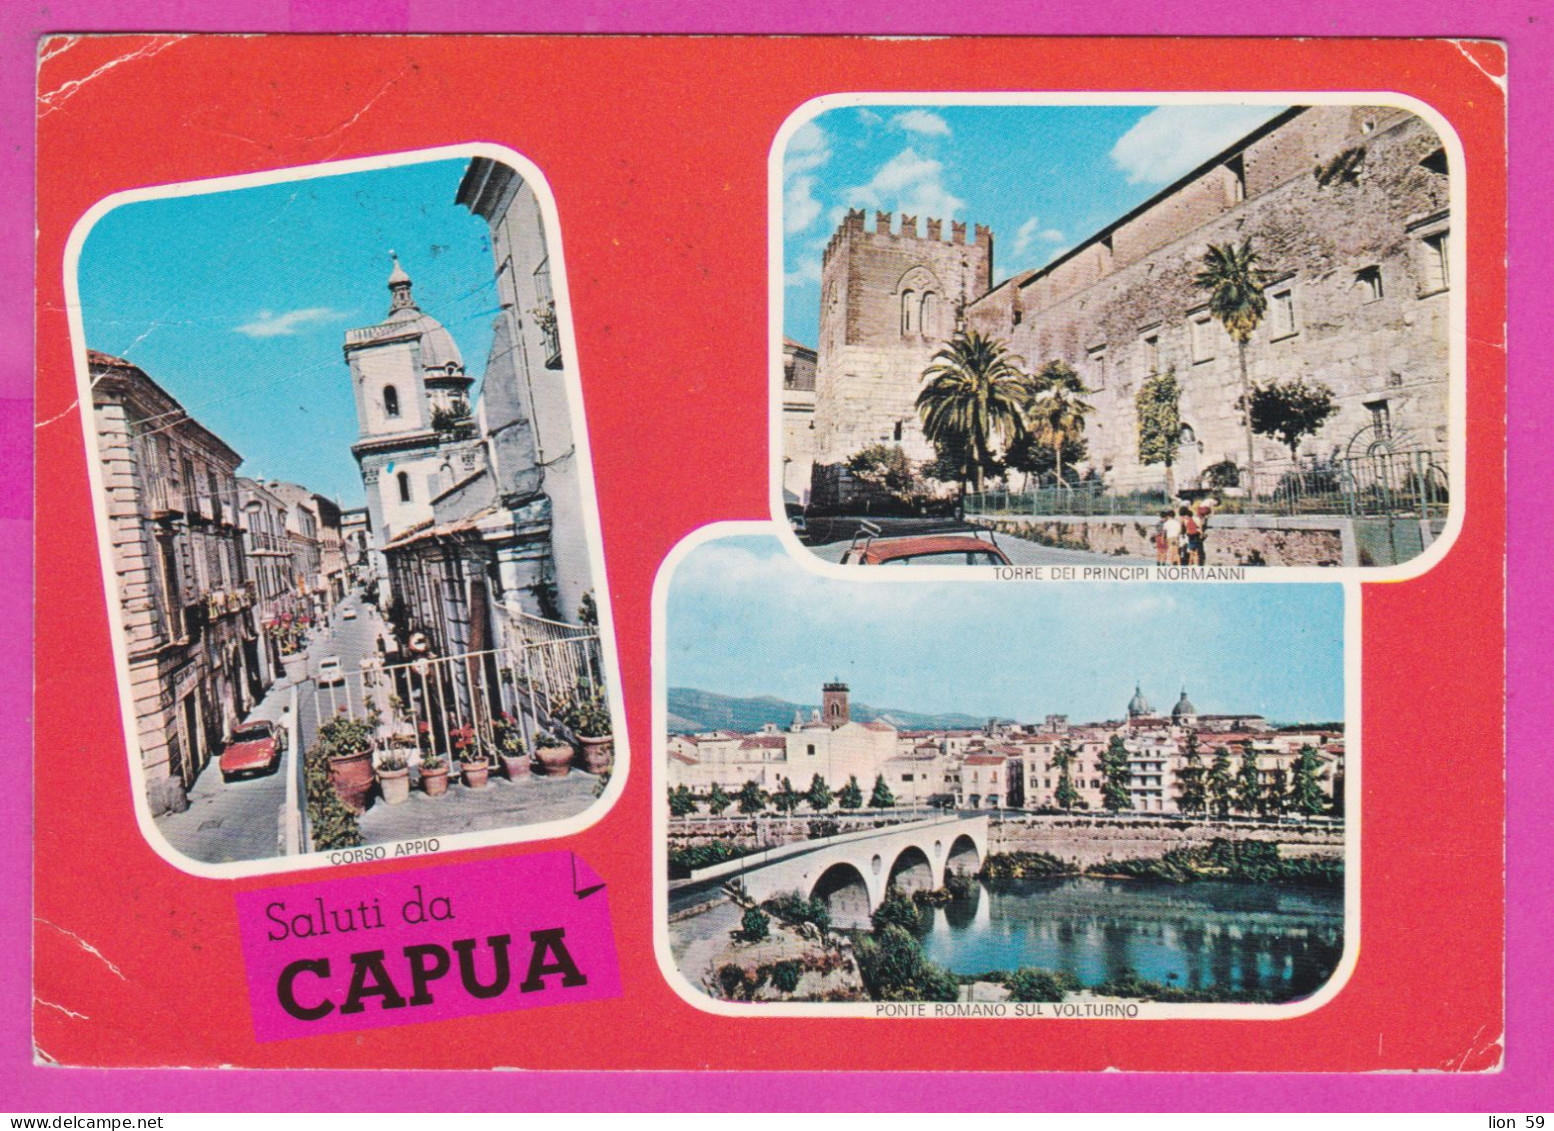 293957 / Italy - Saluti Da CAPUA 3 View Bridge Castle PC 1972 USED  40+50 L Coin Of Syracuse , Italia Italie Italien - 1971-80: Marcophilia